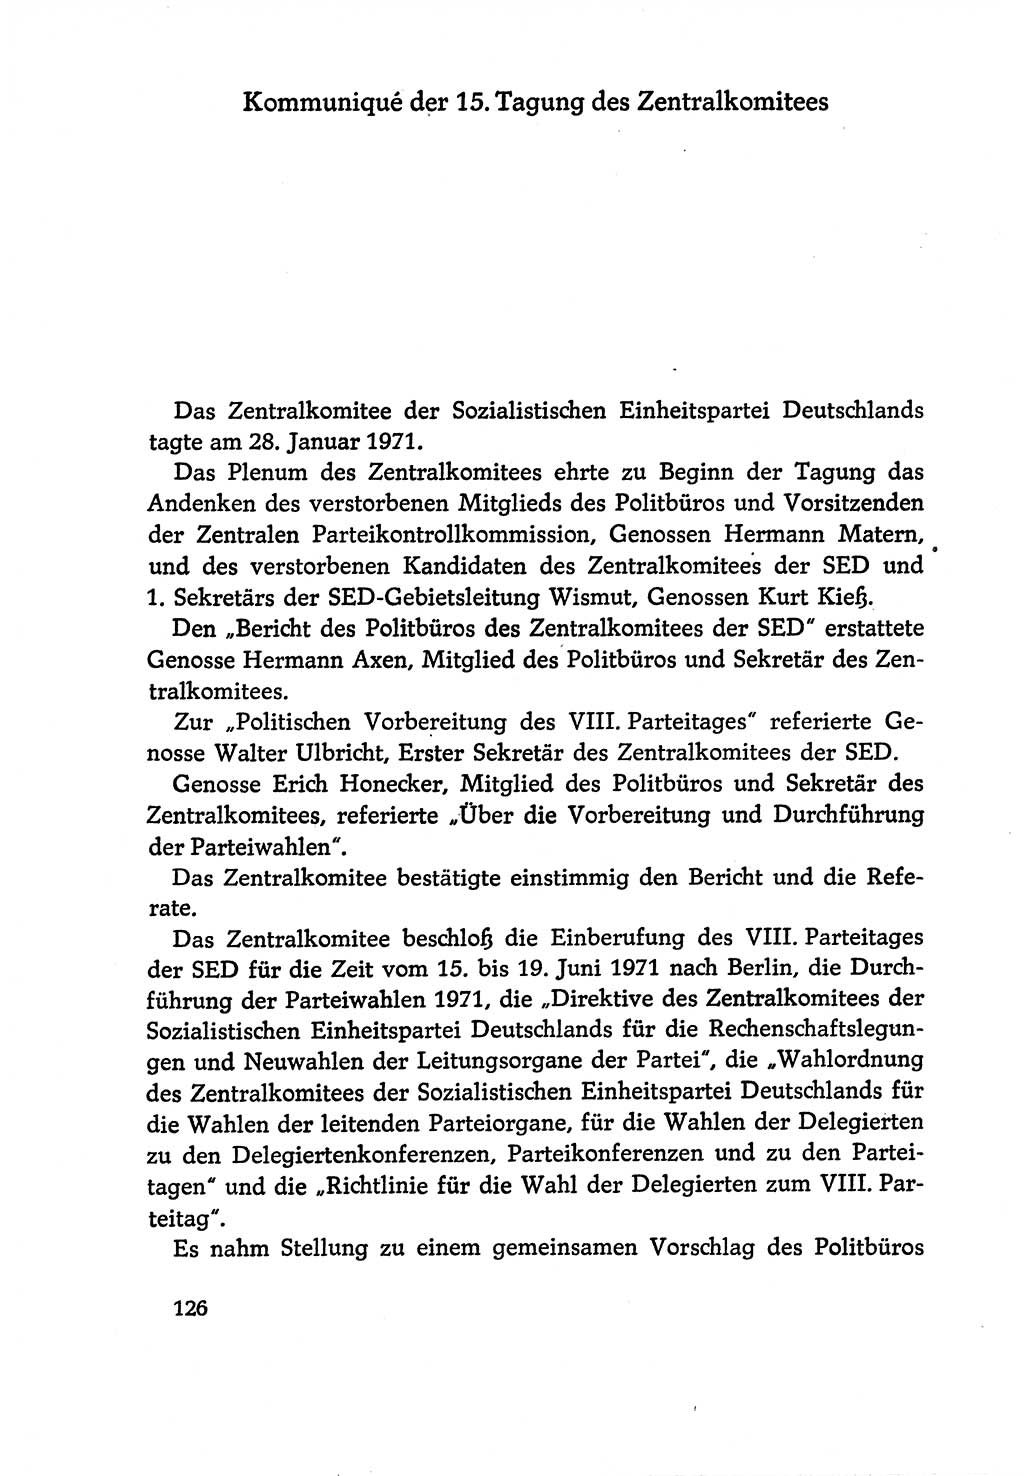 Dokumente der Sozialistischen Einheitspartei Deutschlands (SED) [Deutsche Demokratische Republik (DDR)] 1970-1971, Seite 126 (Dok. SED DDR 1970-1971, S. 126)